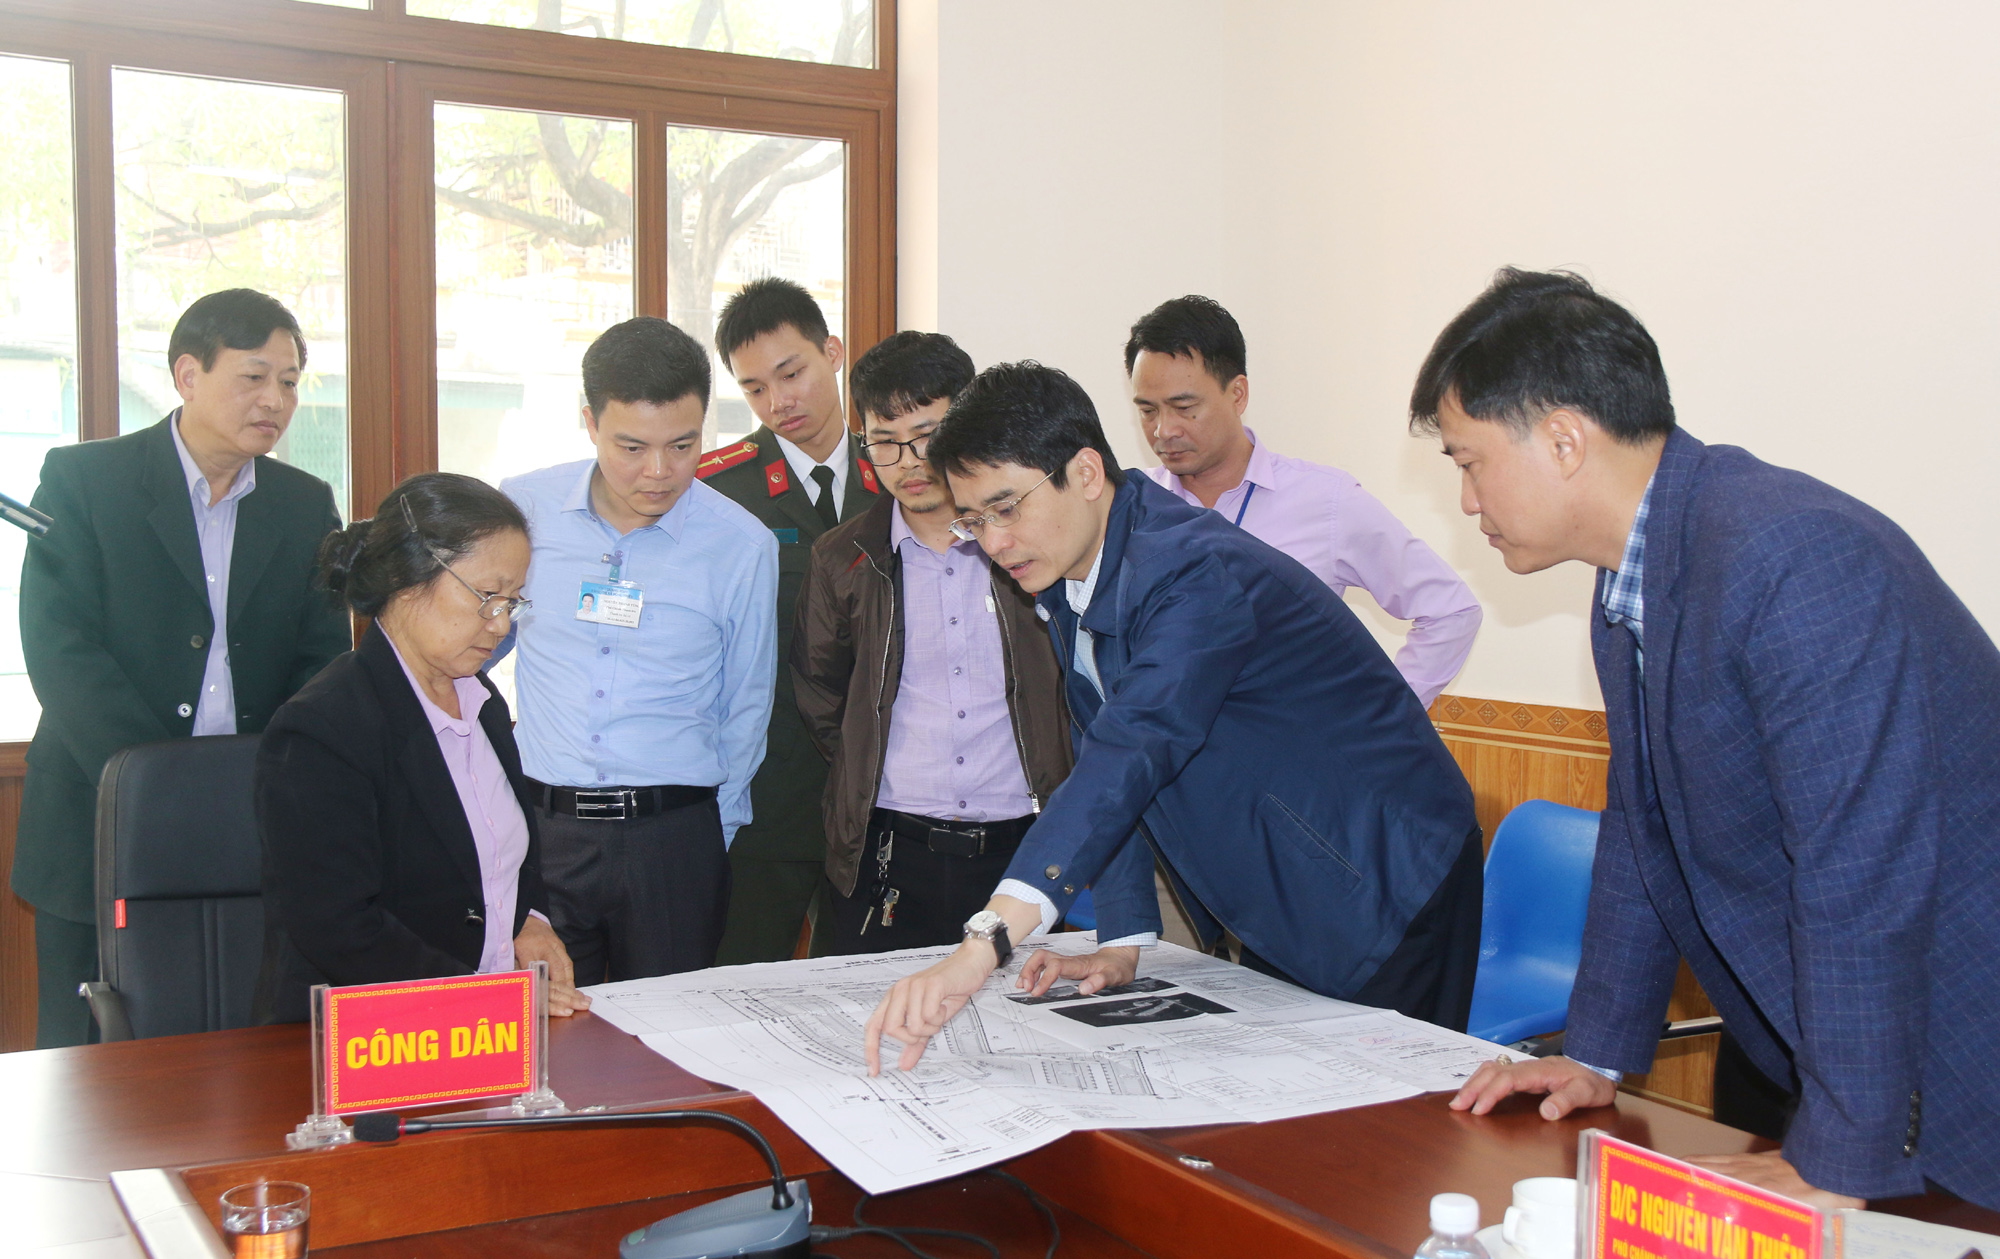 Đồng chí Phạm Văn Thành, Bí thư Thị ủy, Chủ tịch UBND TX Đông Triều cùng các phòng, ban chuyên môn giải quyết kiến nghị của công dân.